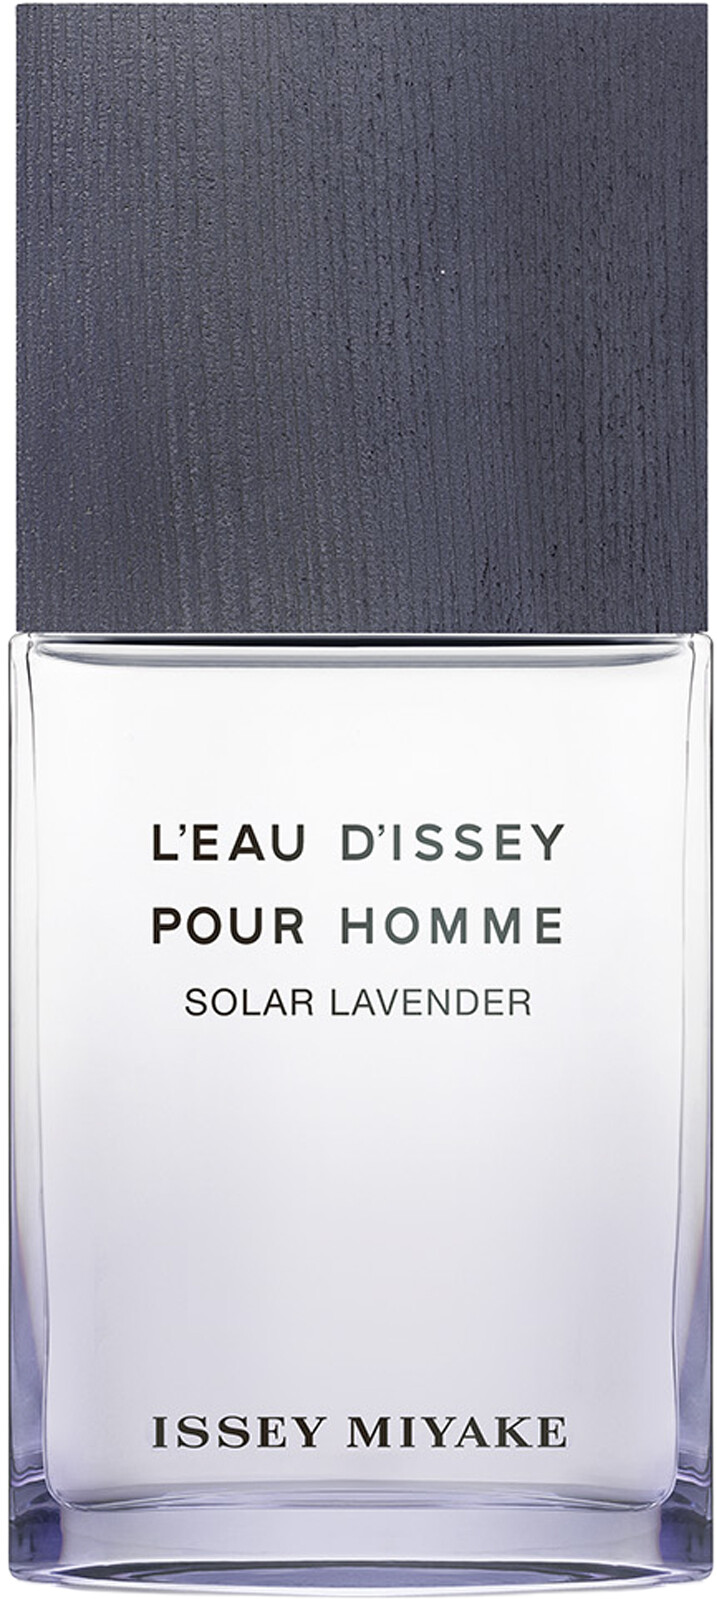 Issey Miyake L'Eau d'Issey Pour Homme Solar Lavender Eau de Toilette Spray 50ml